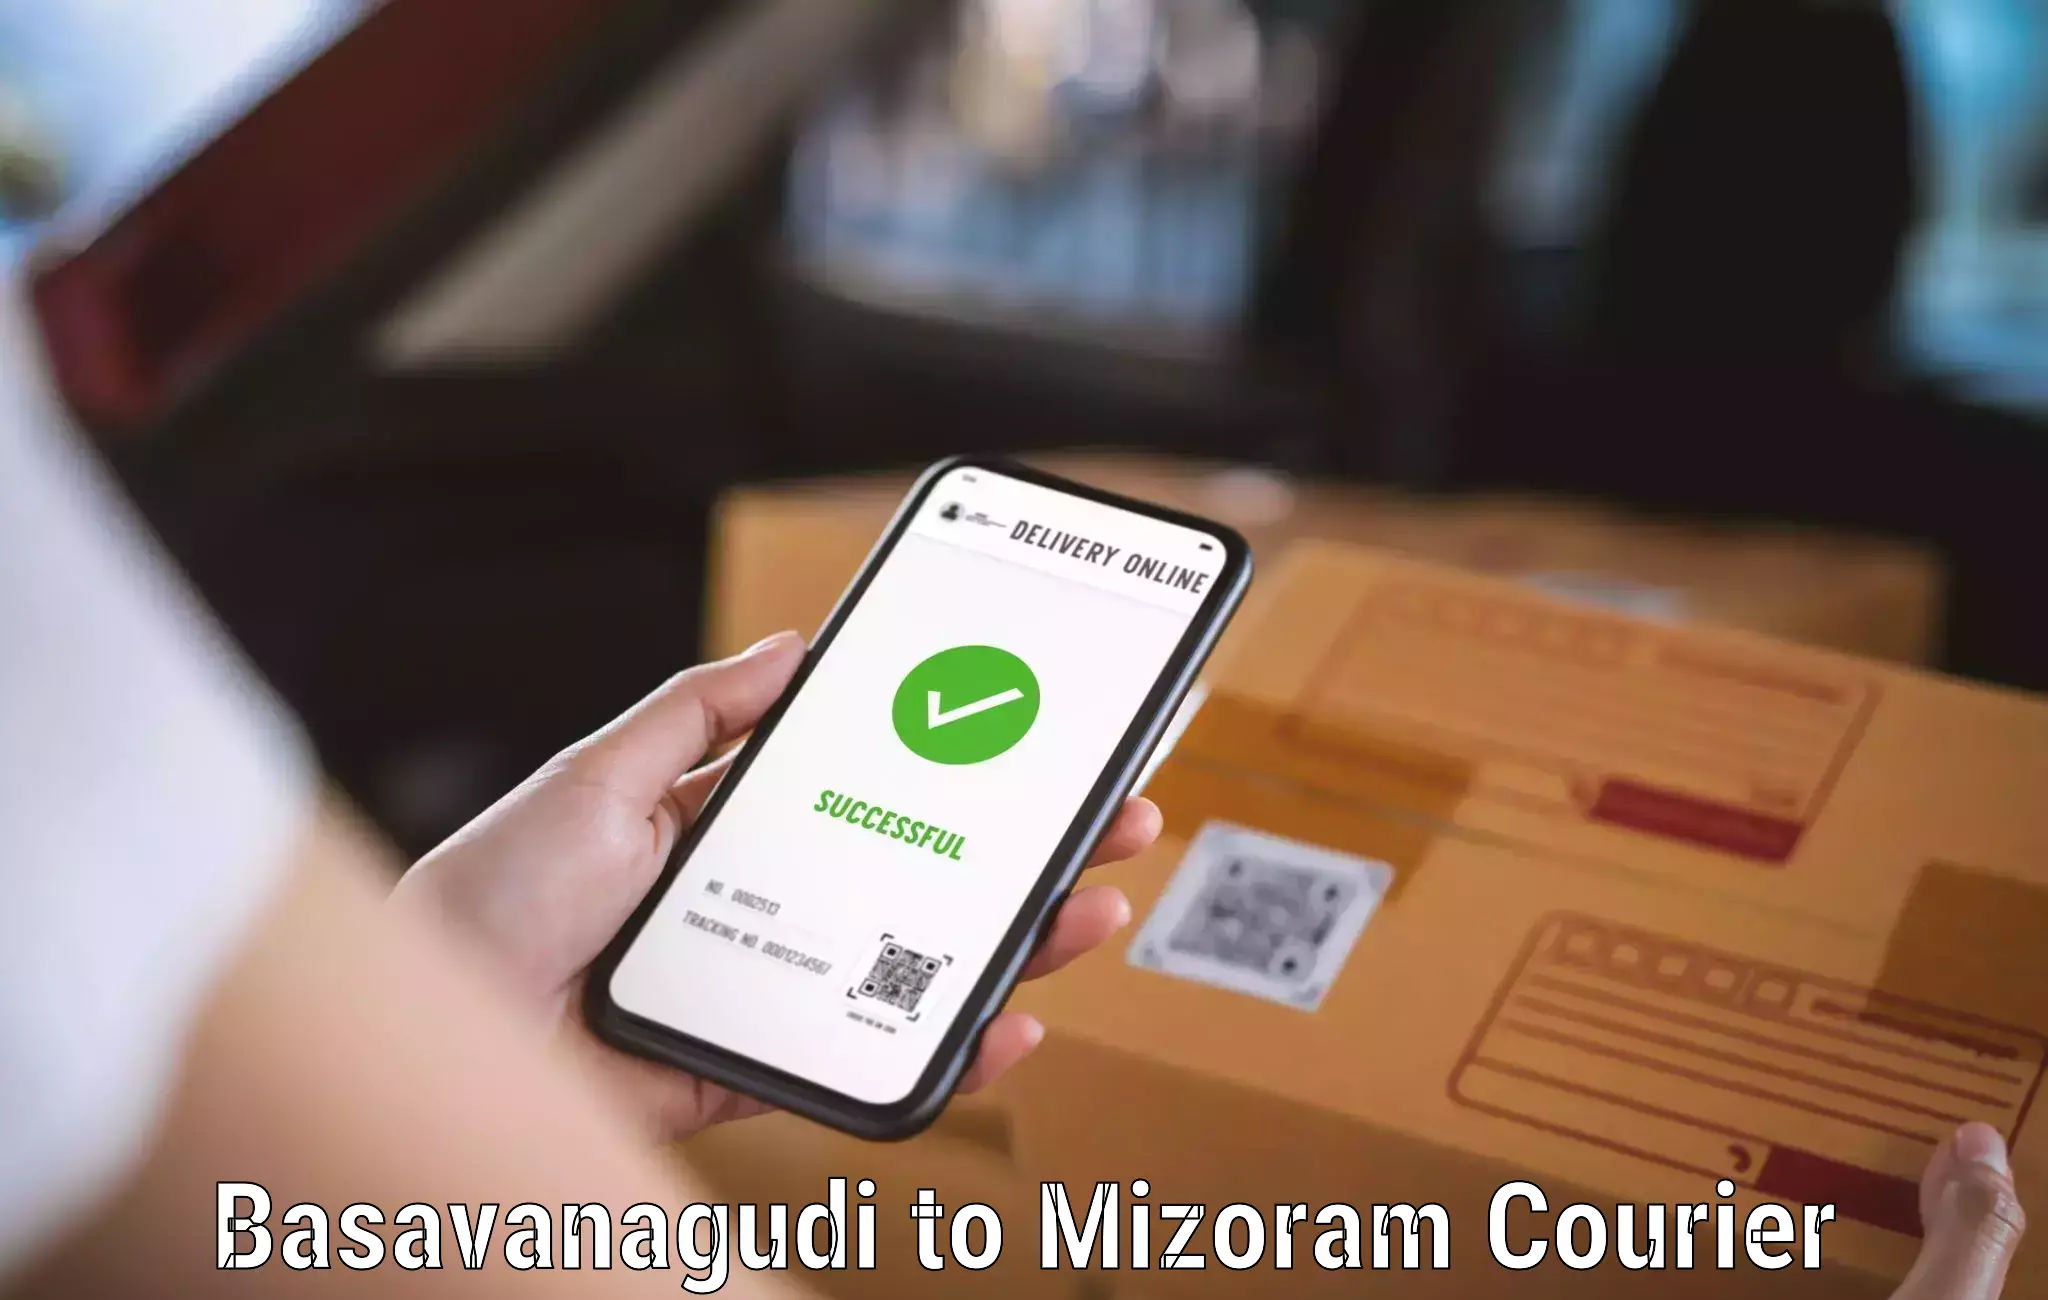 Urgent courier needs Basavanagudi to Darlawn